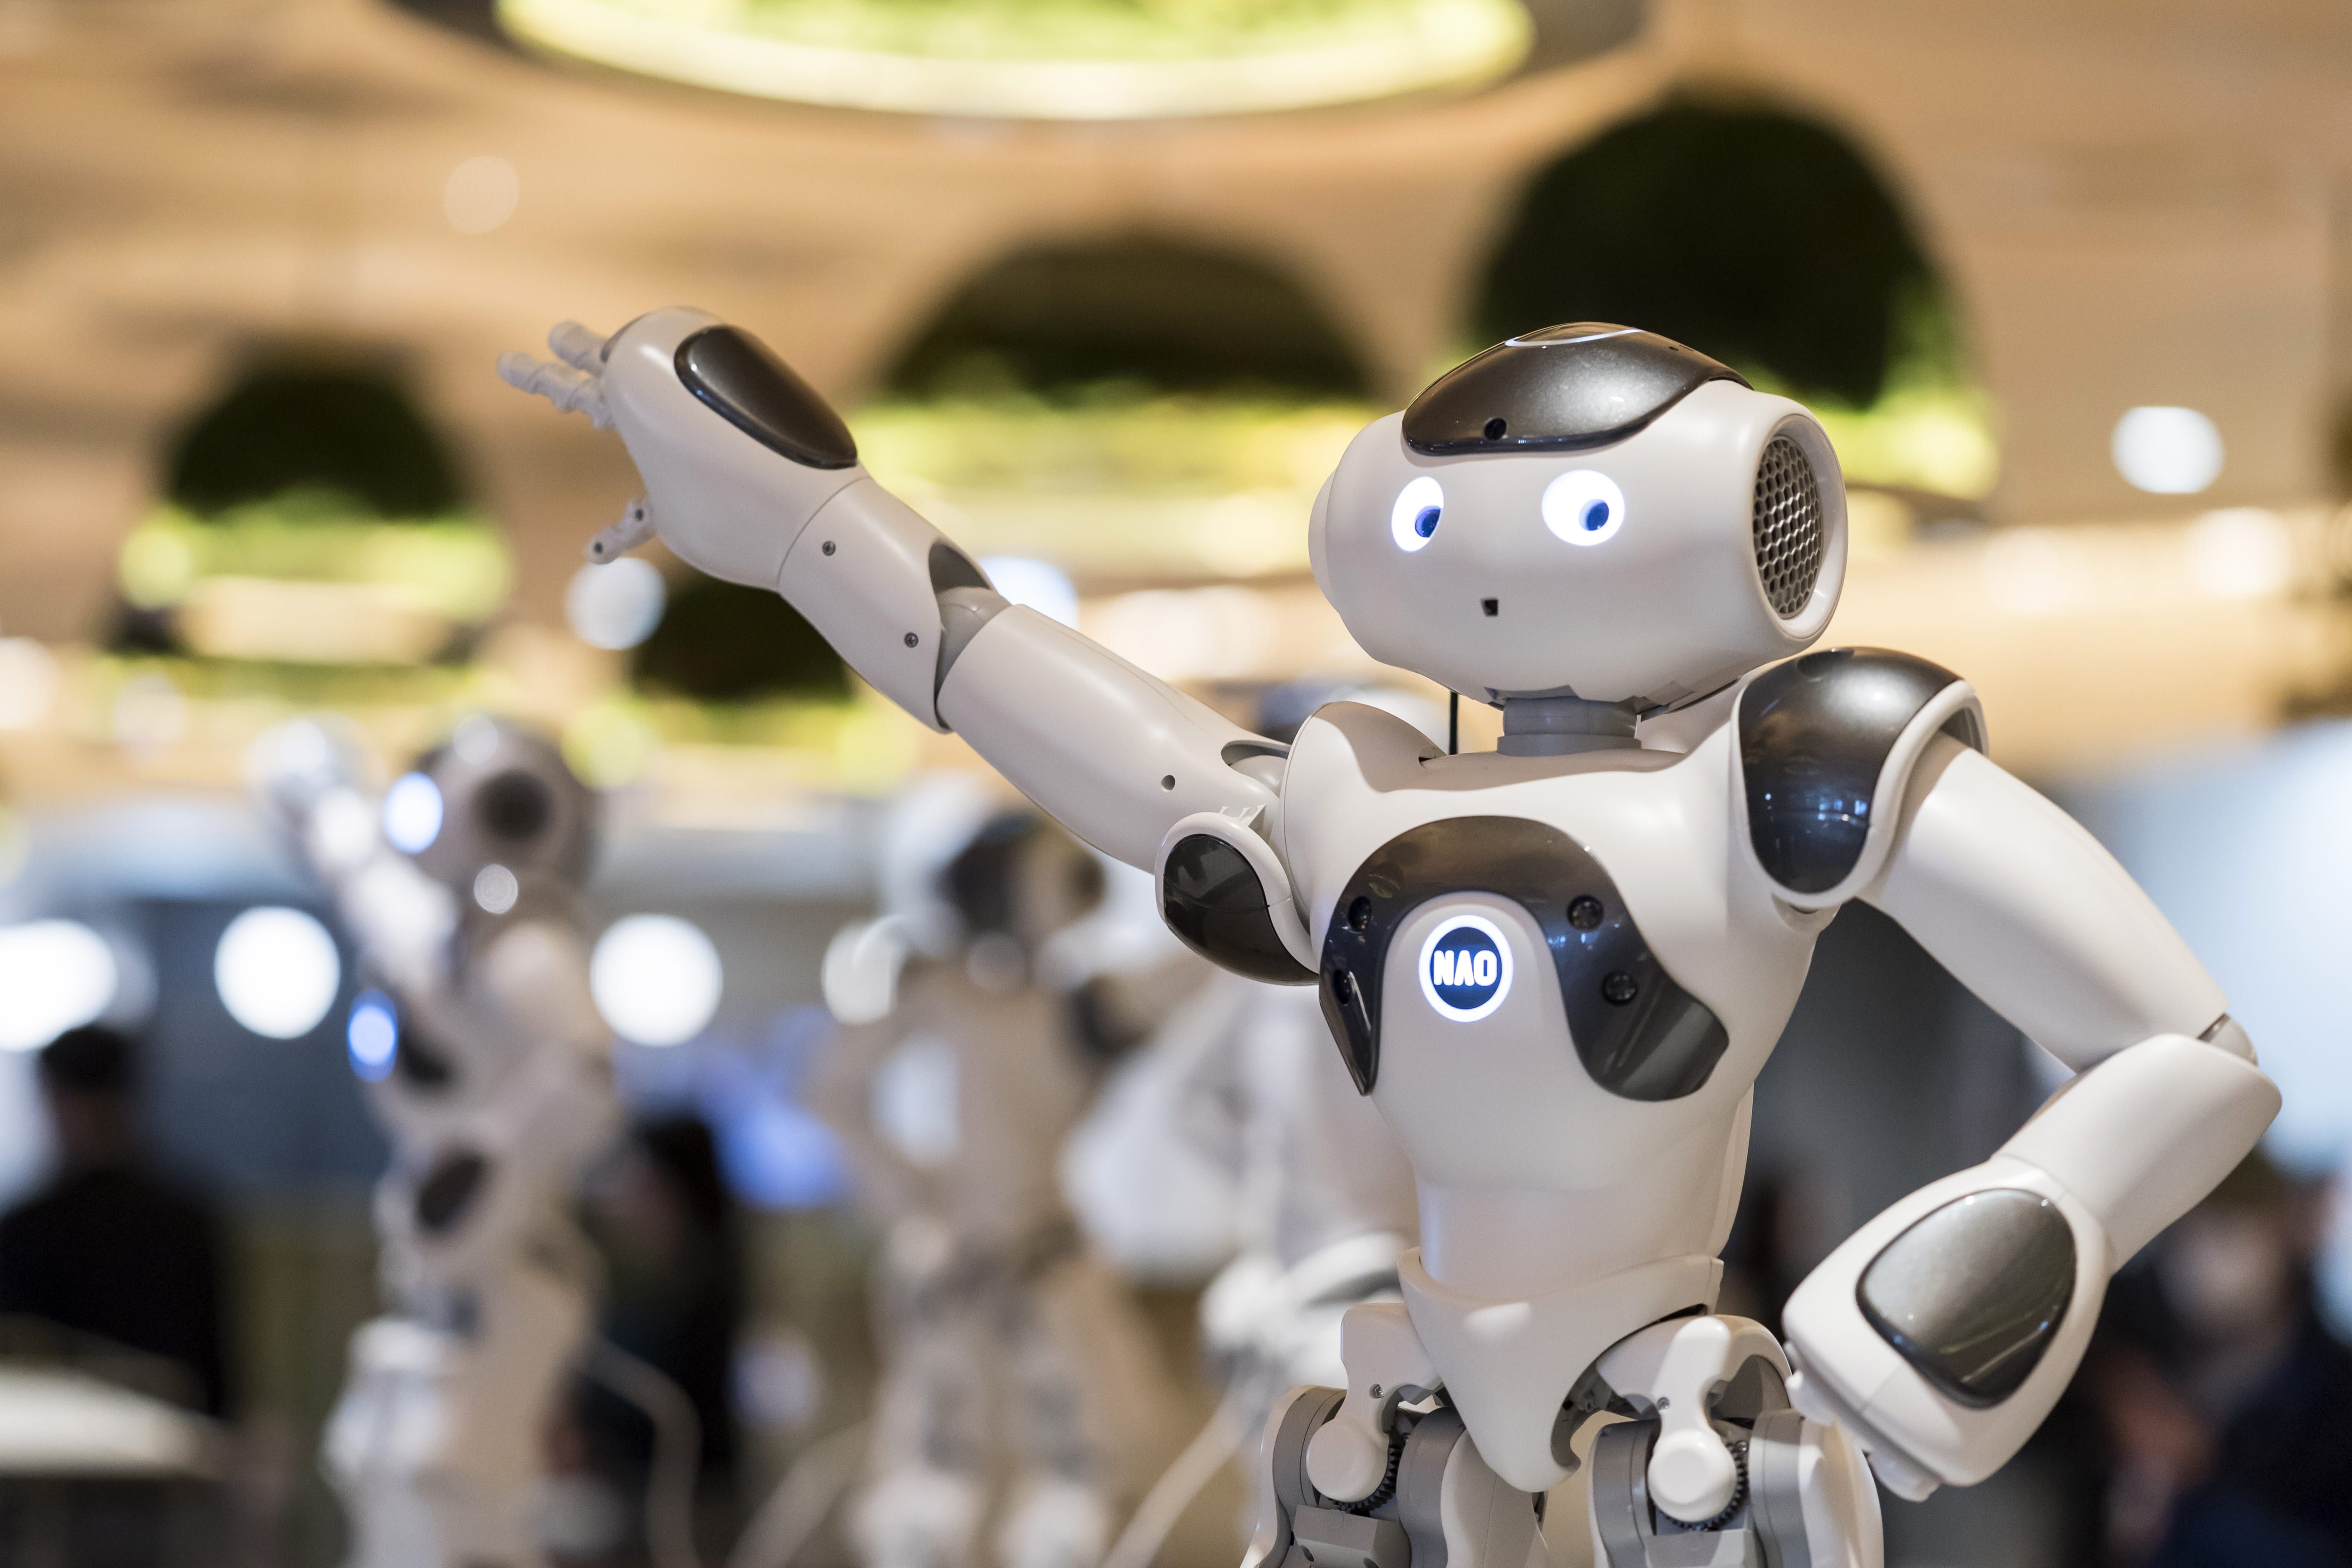 Inovador I.A. Robôs manterão conversas e aprenderão a personalidade dos usuários